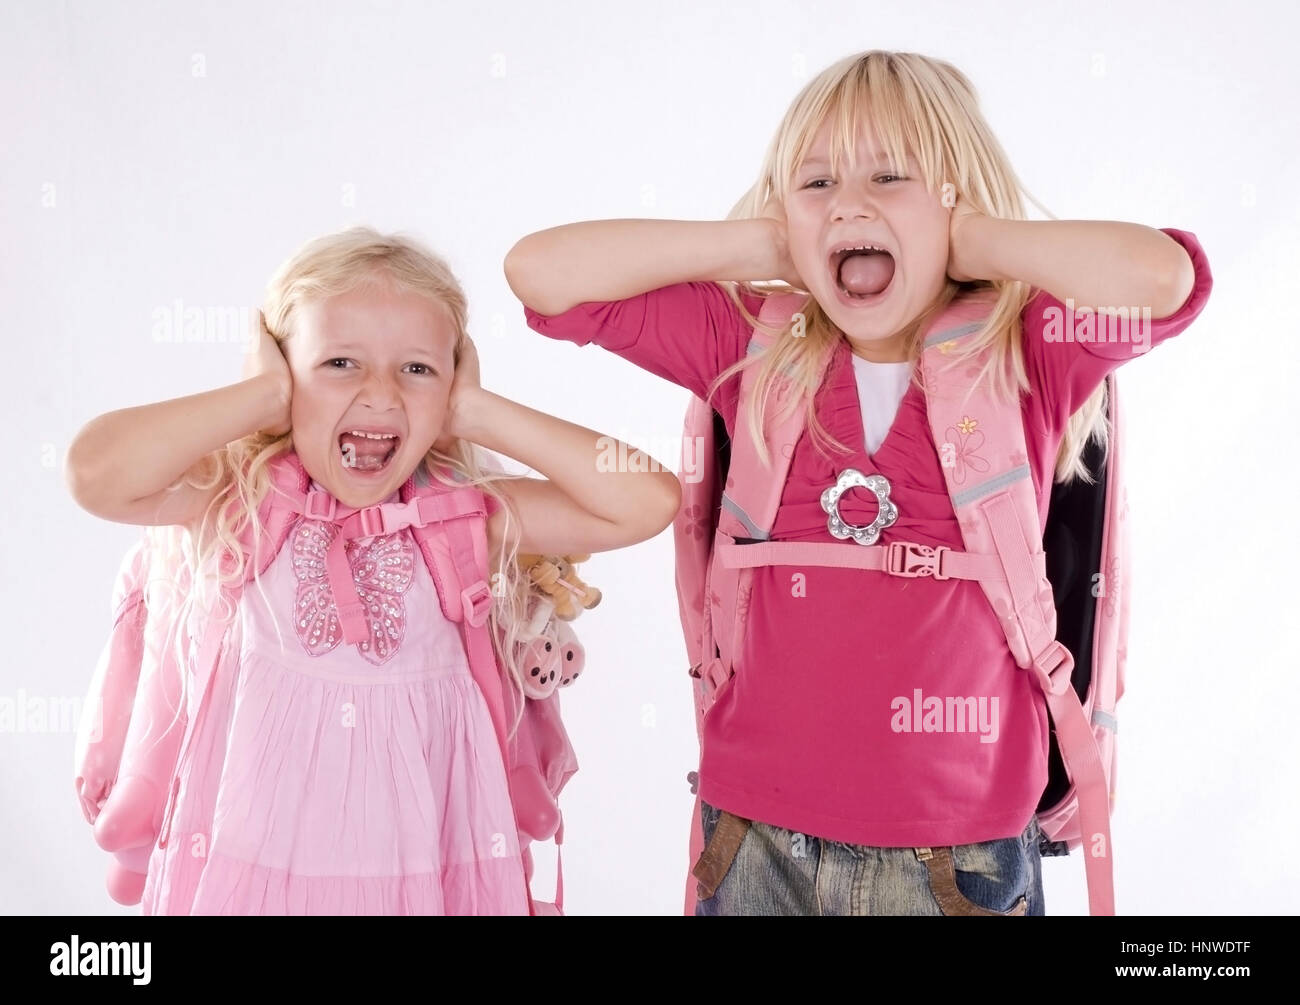 Modello di rilascio, Zwei Schulanfaengerinnen halten sich die Ohren zu und schreien - scuola di due ragazze urlando Foto Stock